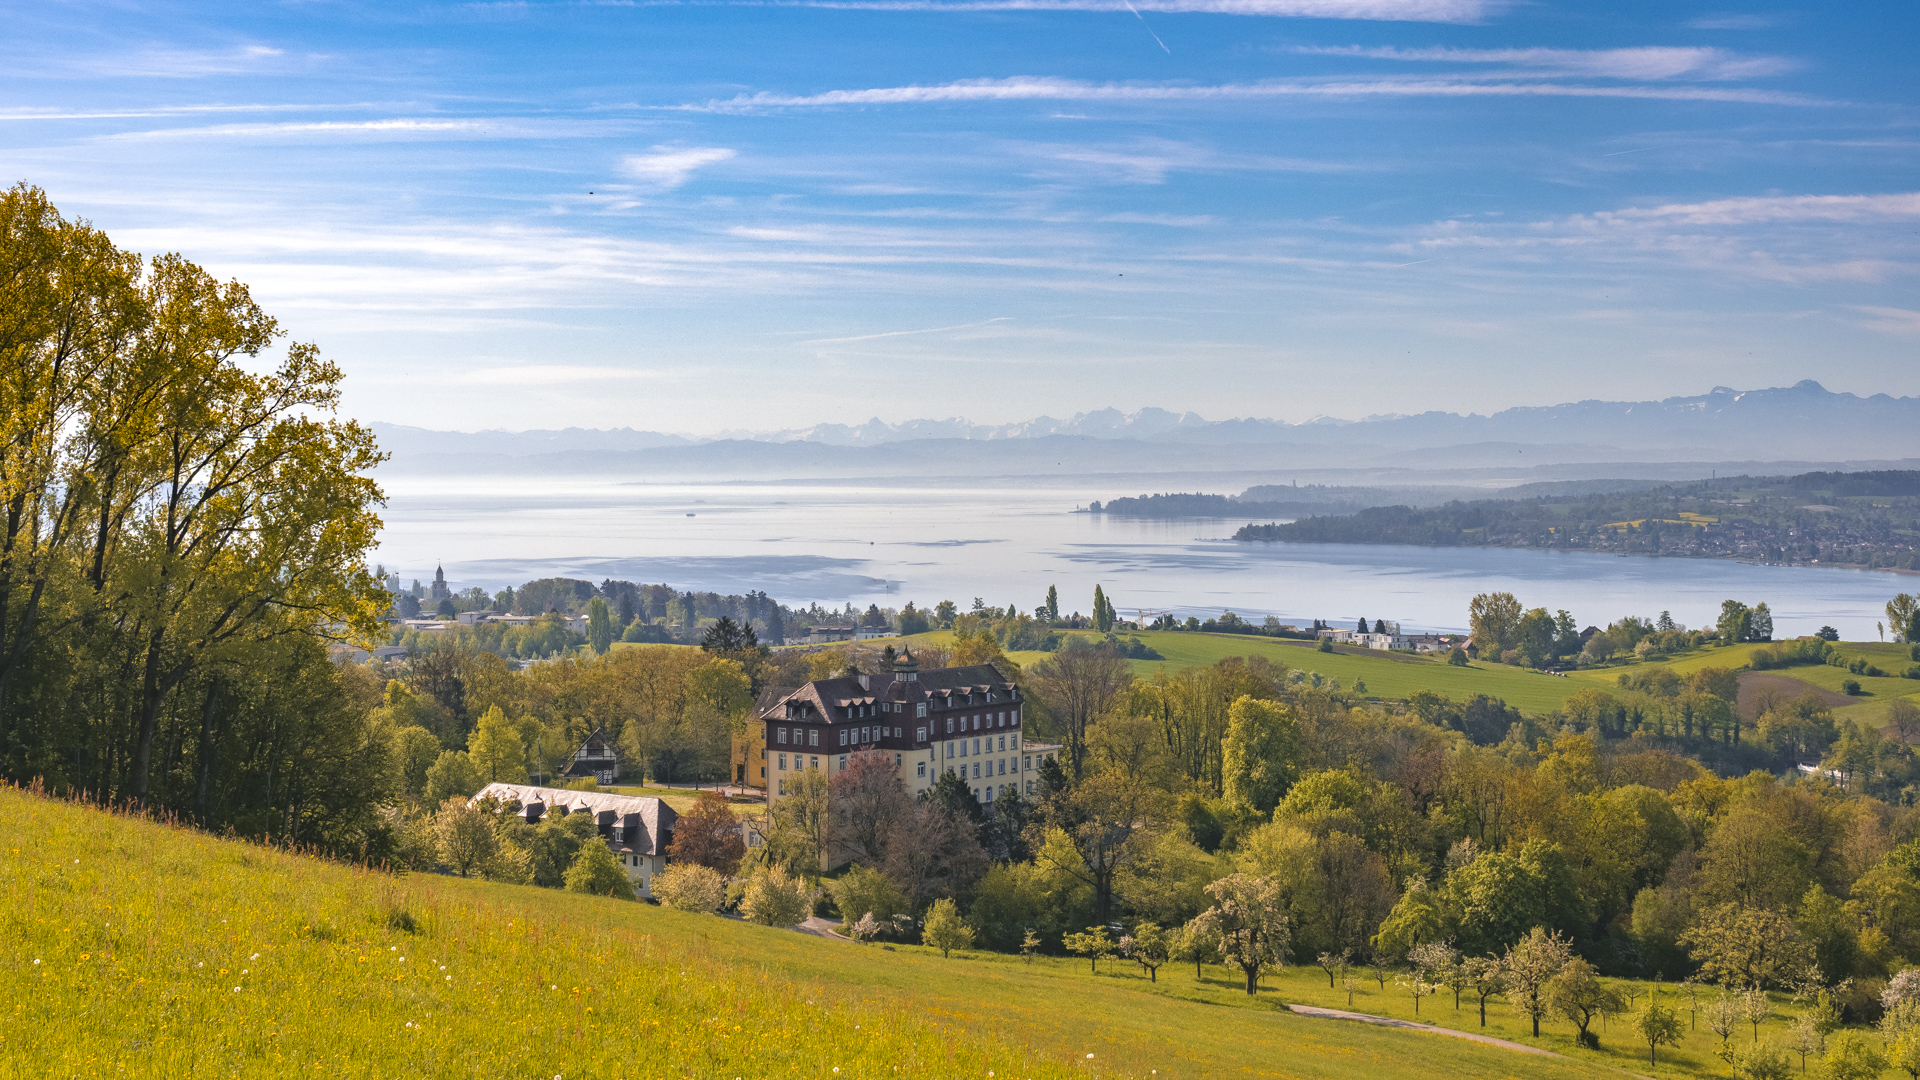 Blick auf den Überlinger See, im Vordergrund das Schloss Spetzgart